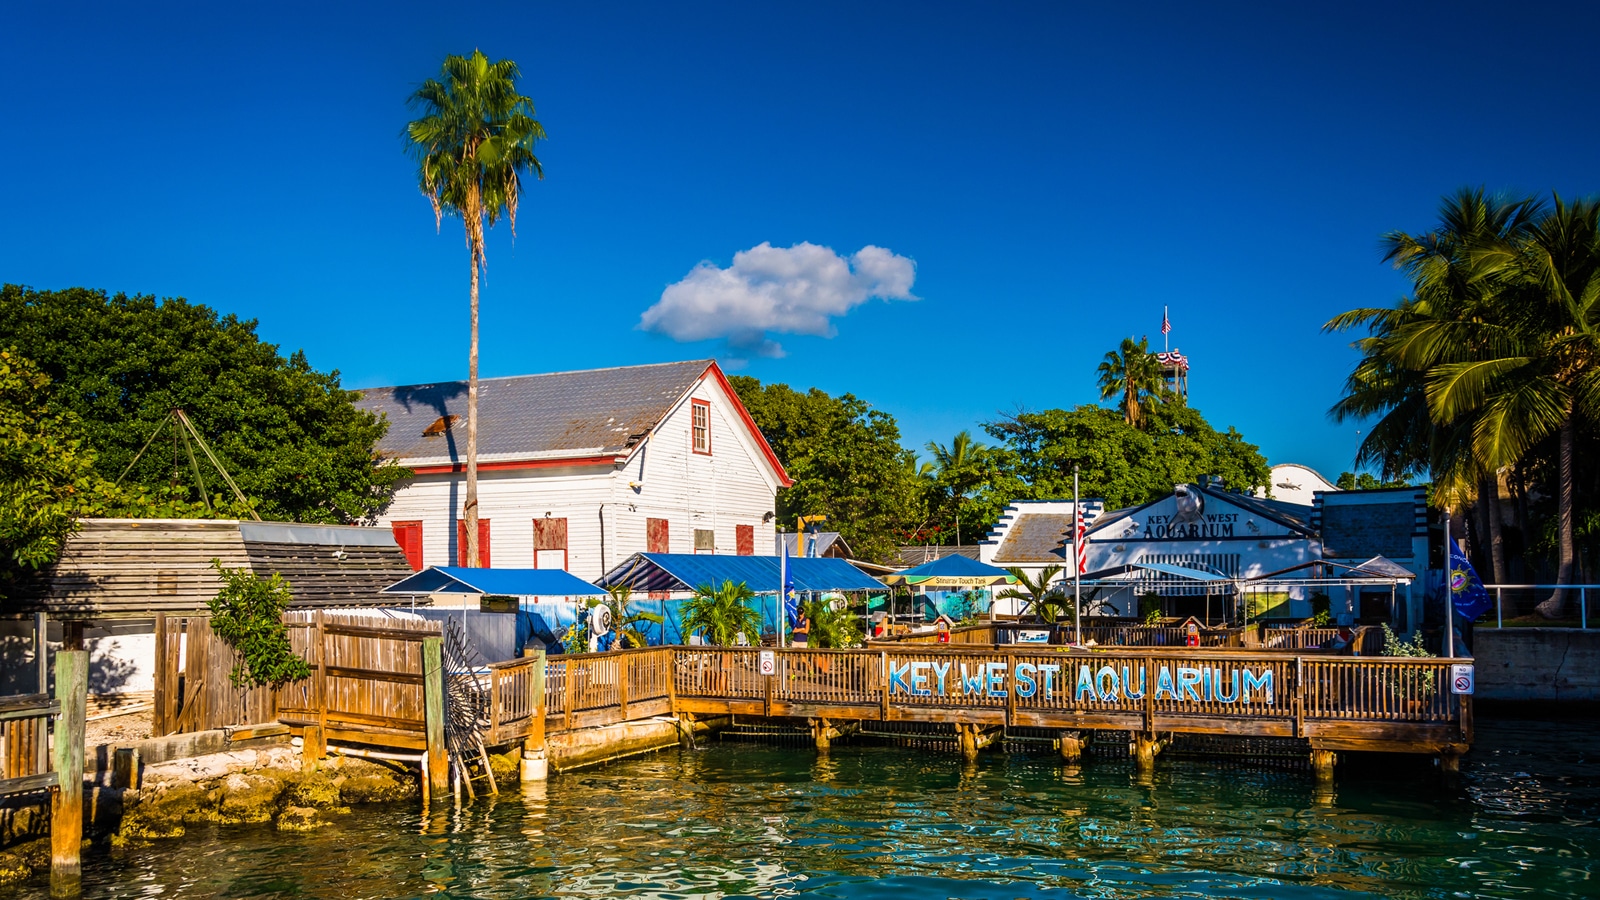 The Key West Aquarium